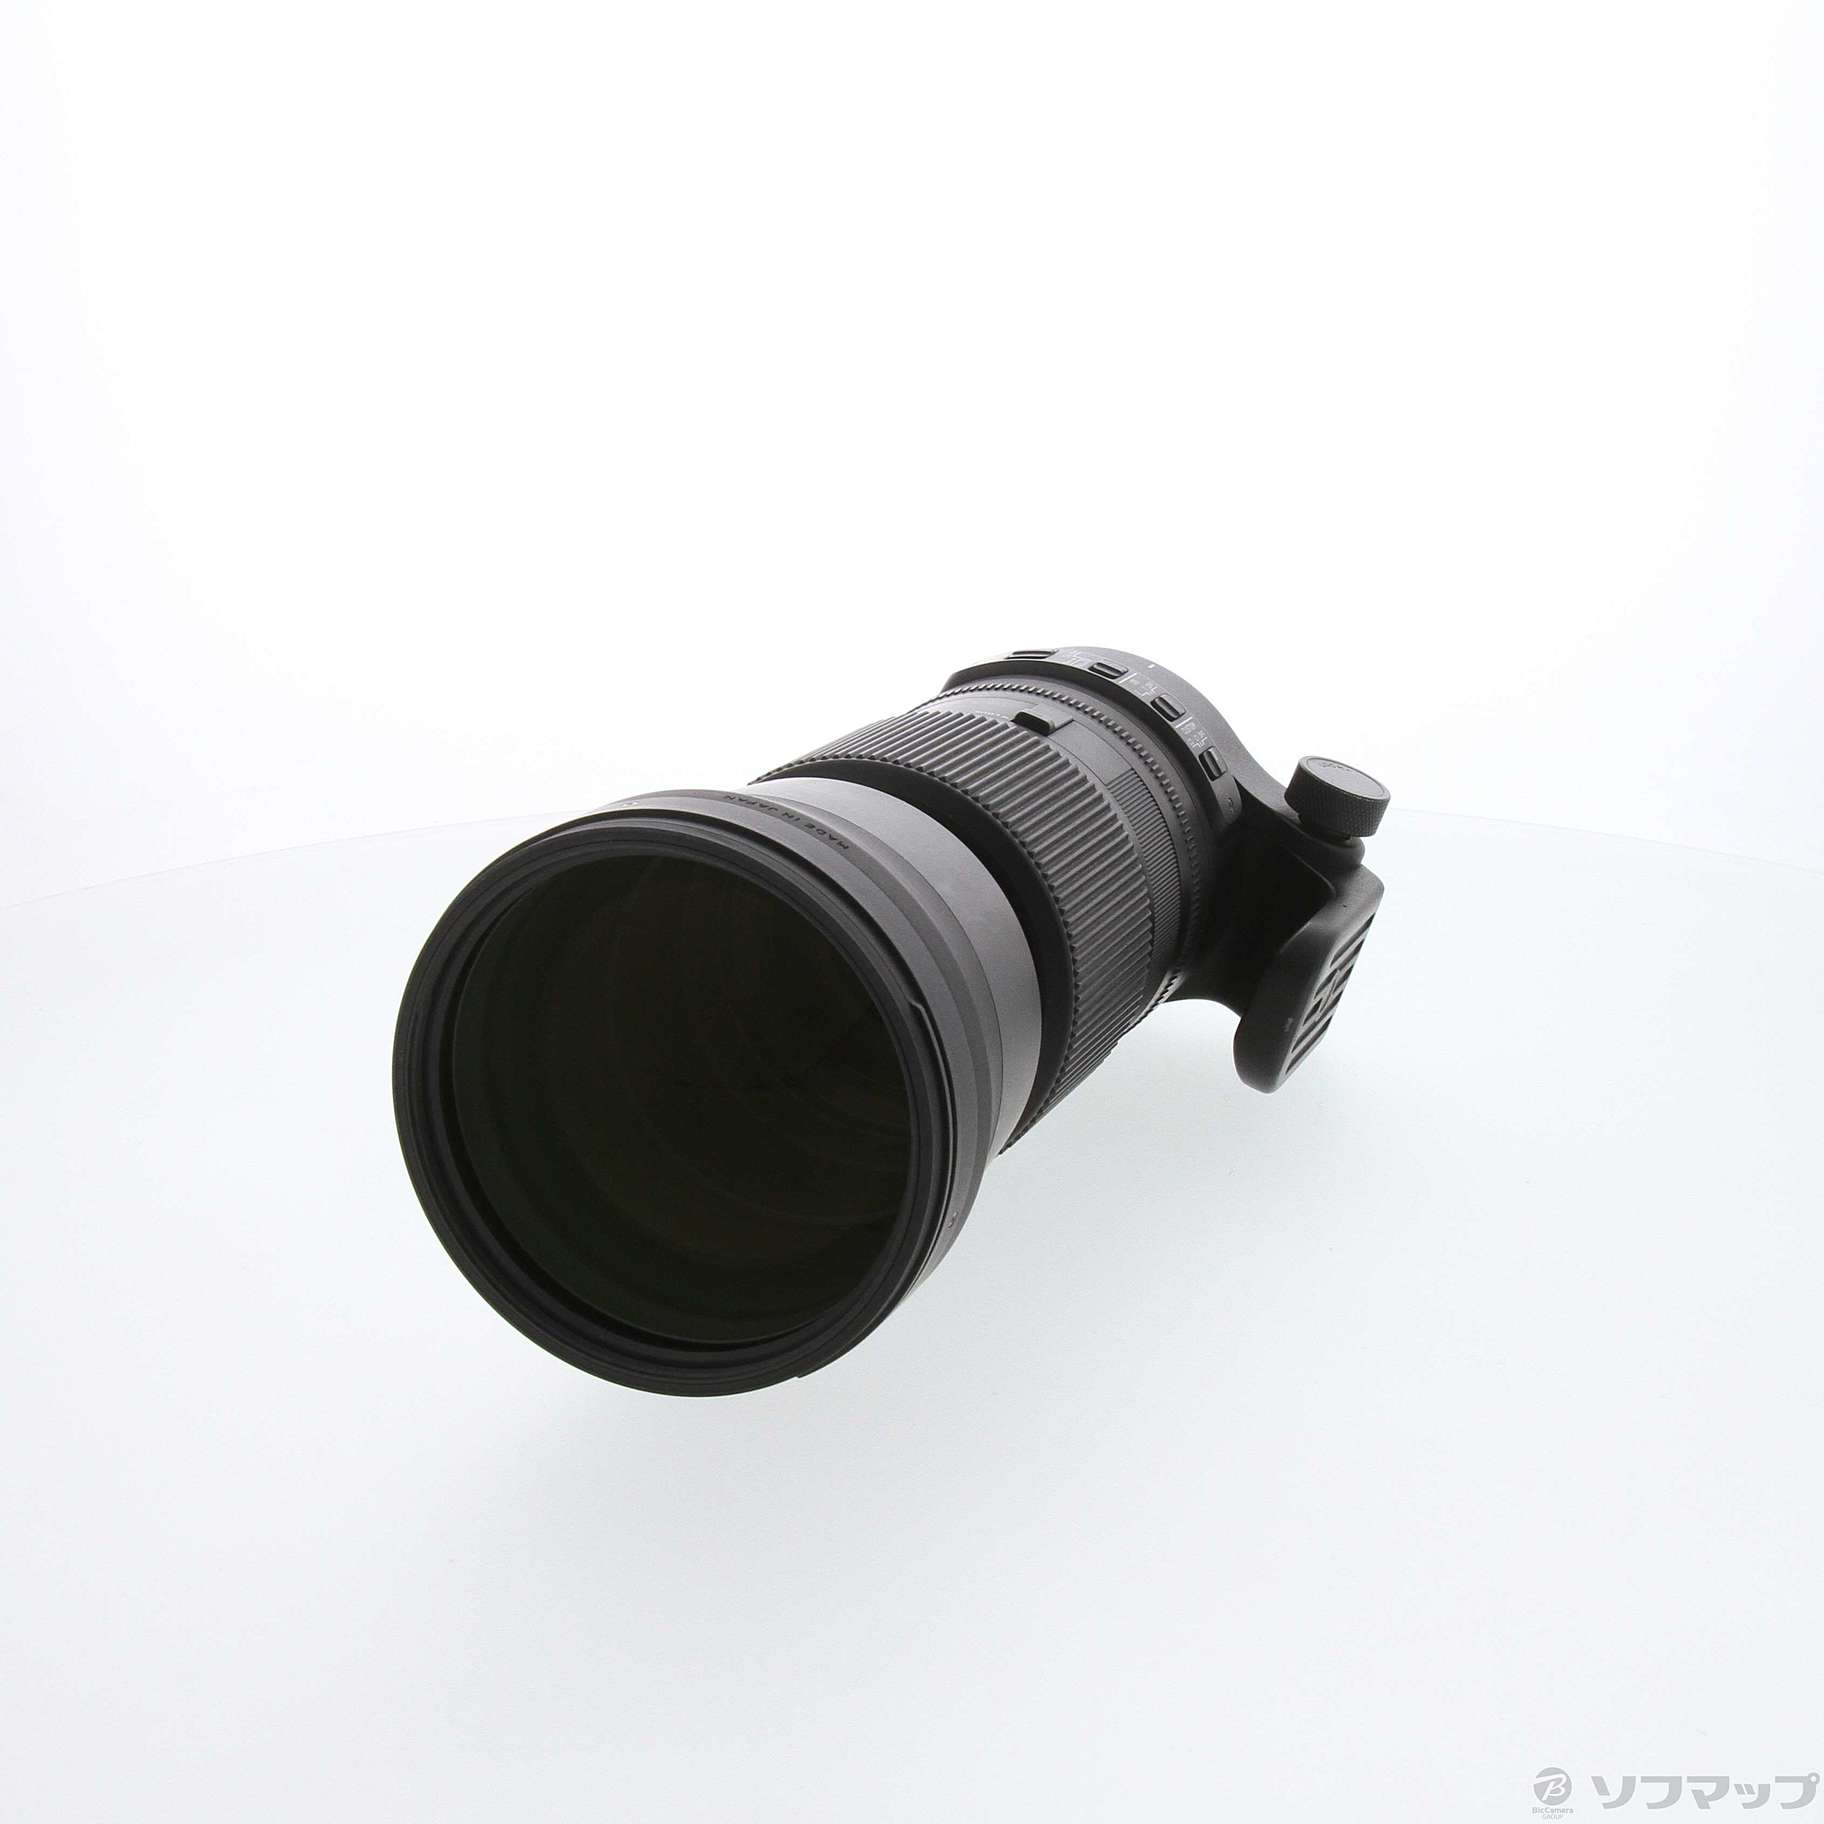 (中古)SIGMA SIGMA 150-600mm F5-6.3 DG OS HSM (Nikon用) Contemporary(377-ud)